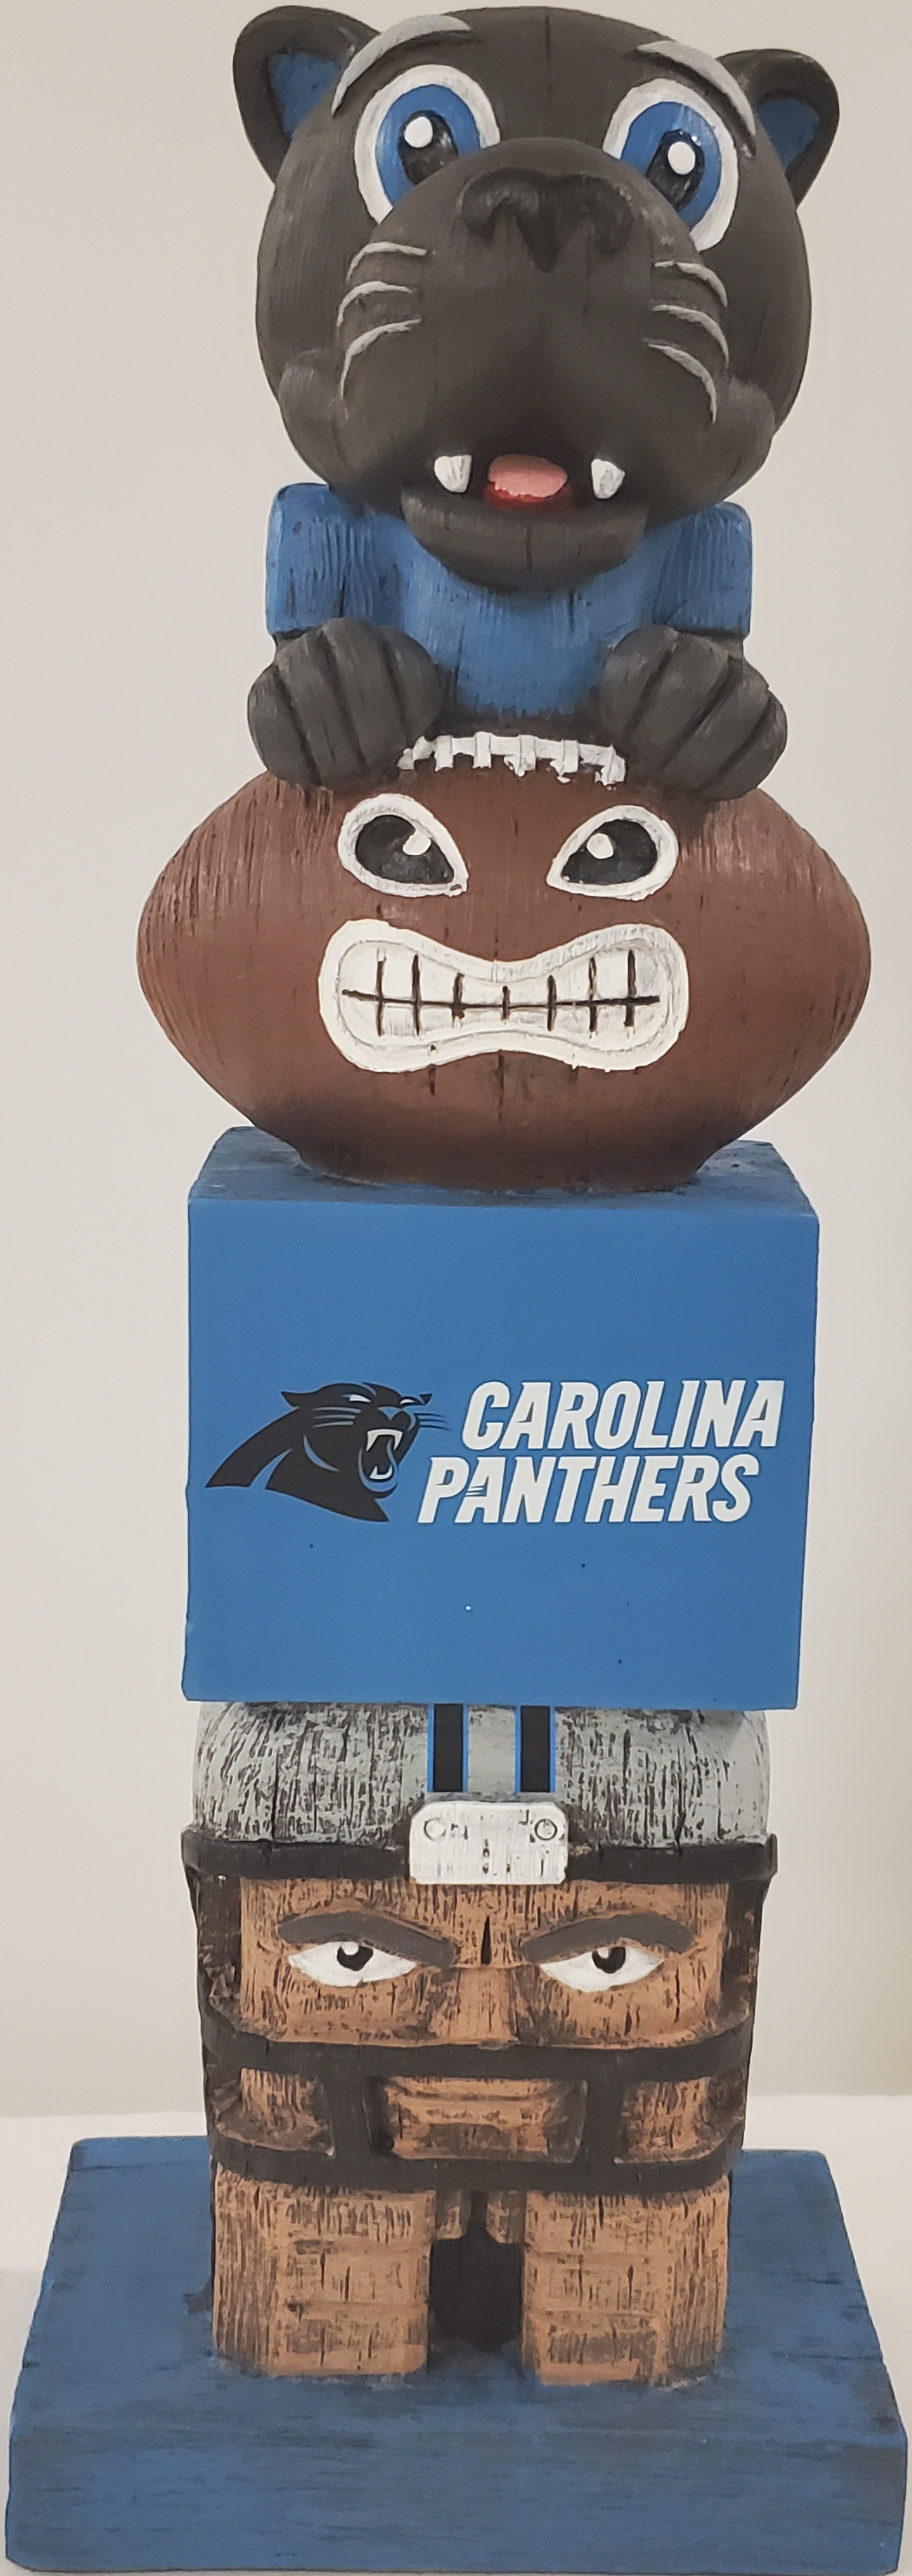 Carolina Panthers Totem